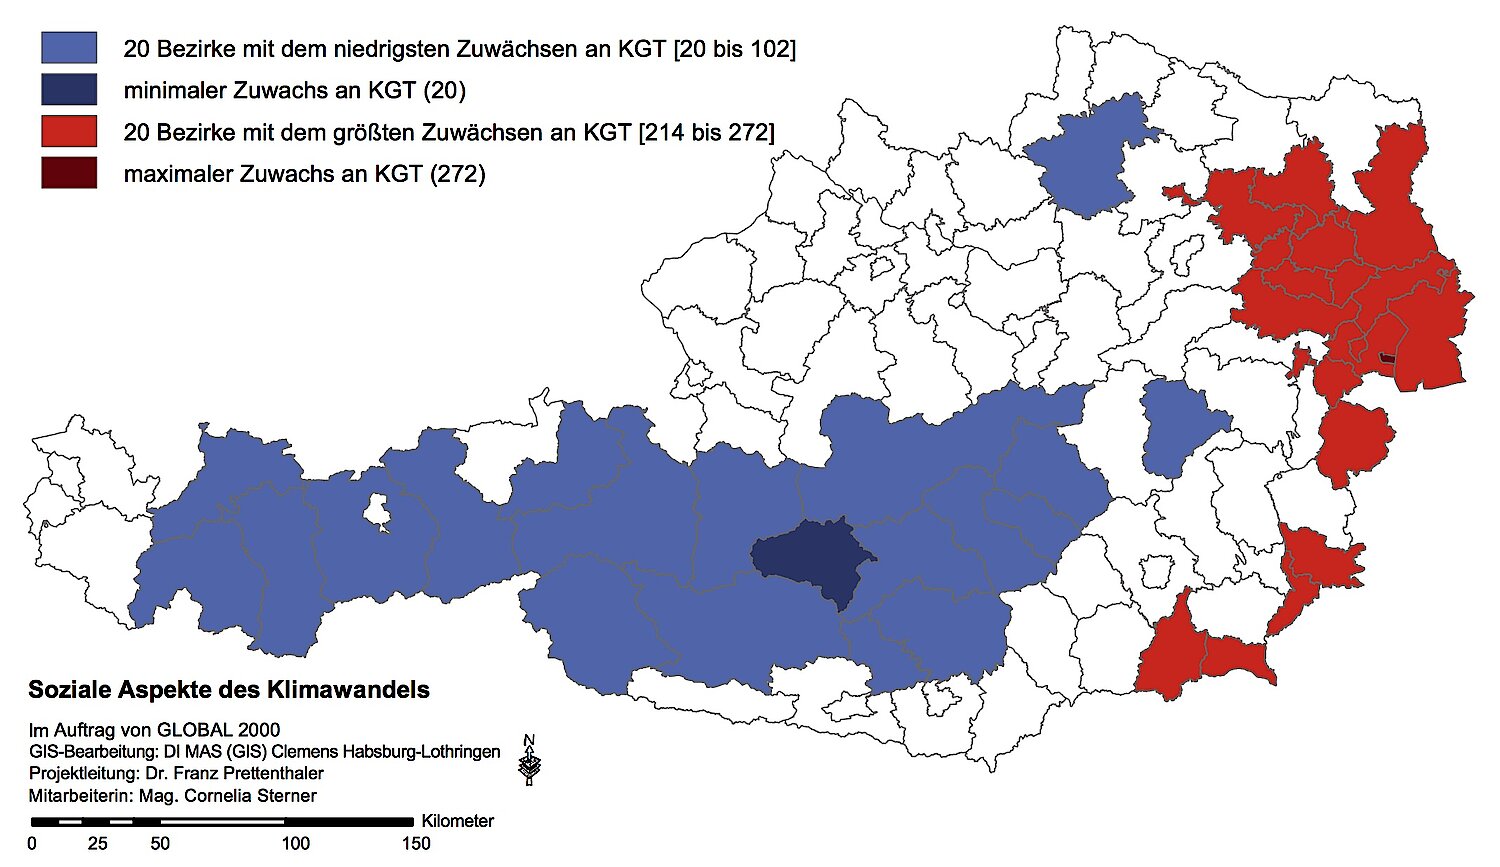 Österreichkarte: Die Bezirke mit den kleinsten und größten Zuwächsen an Kühlgradtagen 1981 bis 2041.